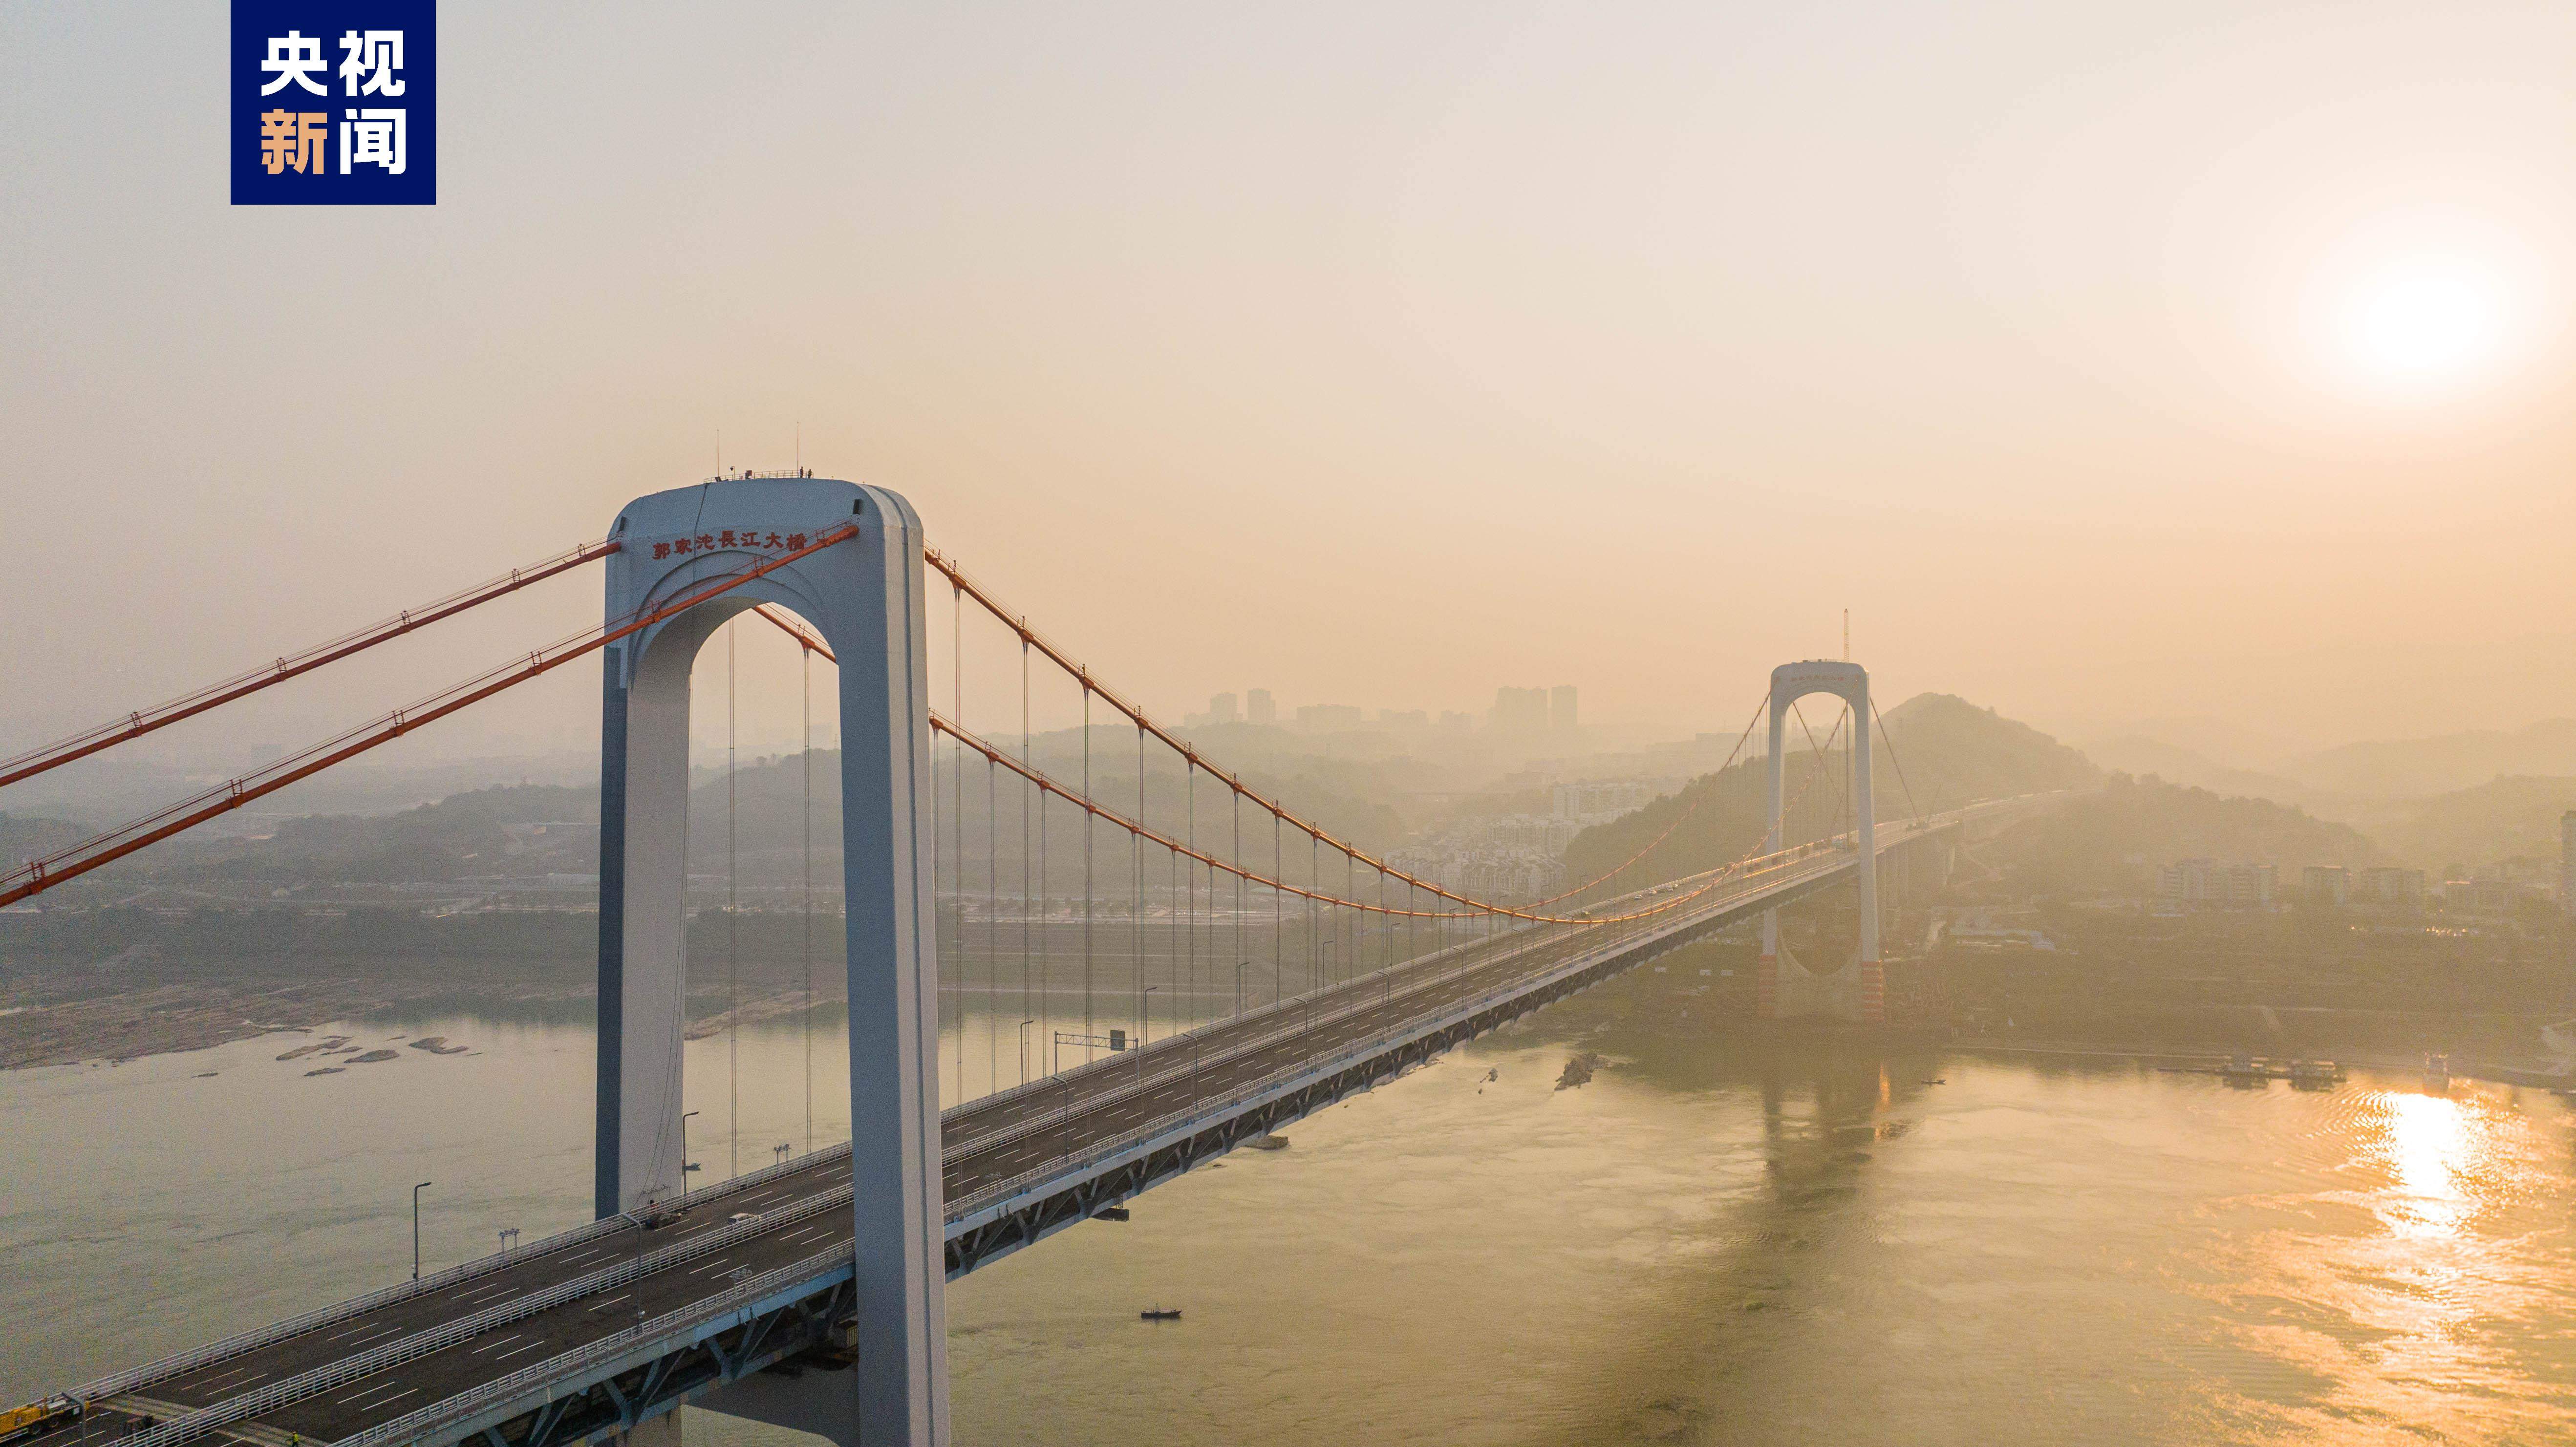 重庆城区 第一座 跨江大桥 。(新图45张，请观赏) - 城市论坛 - 天府社区